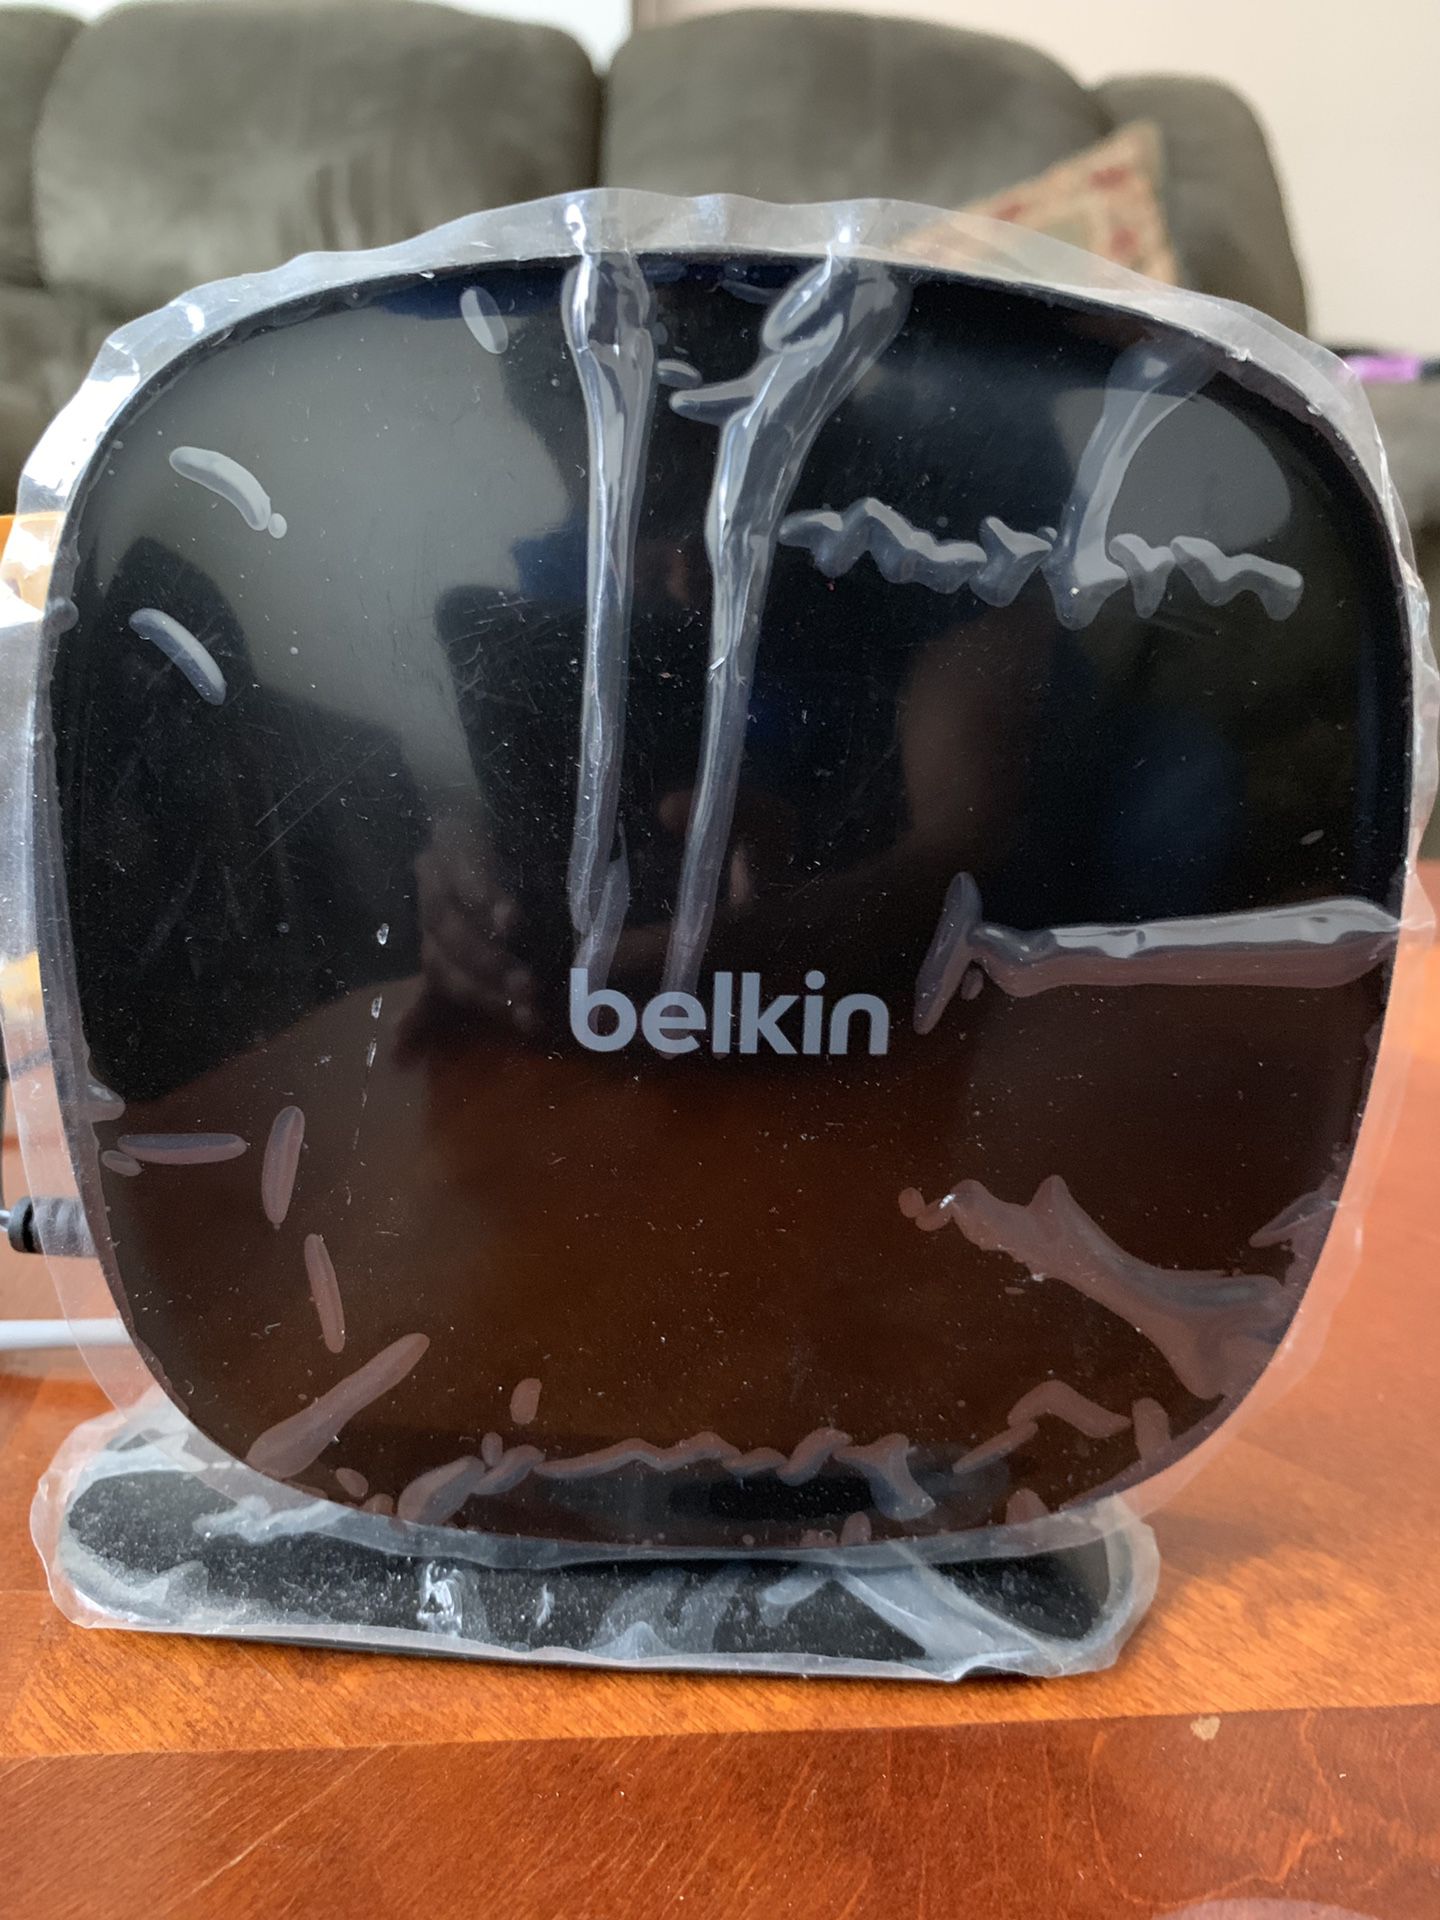 Belkin N600 WiFi router